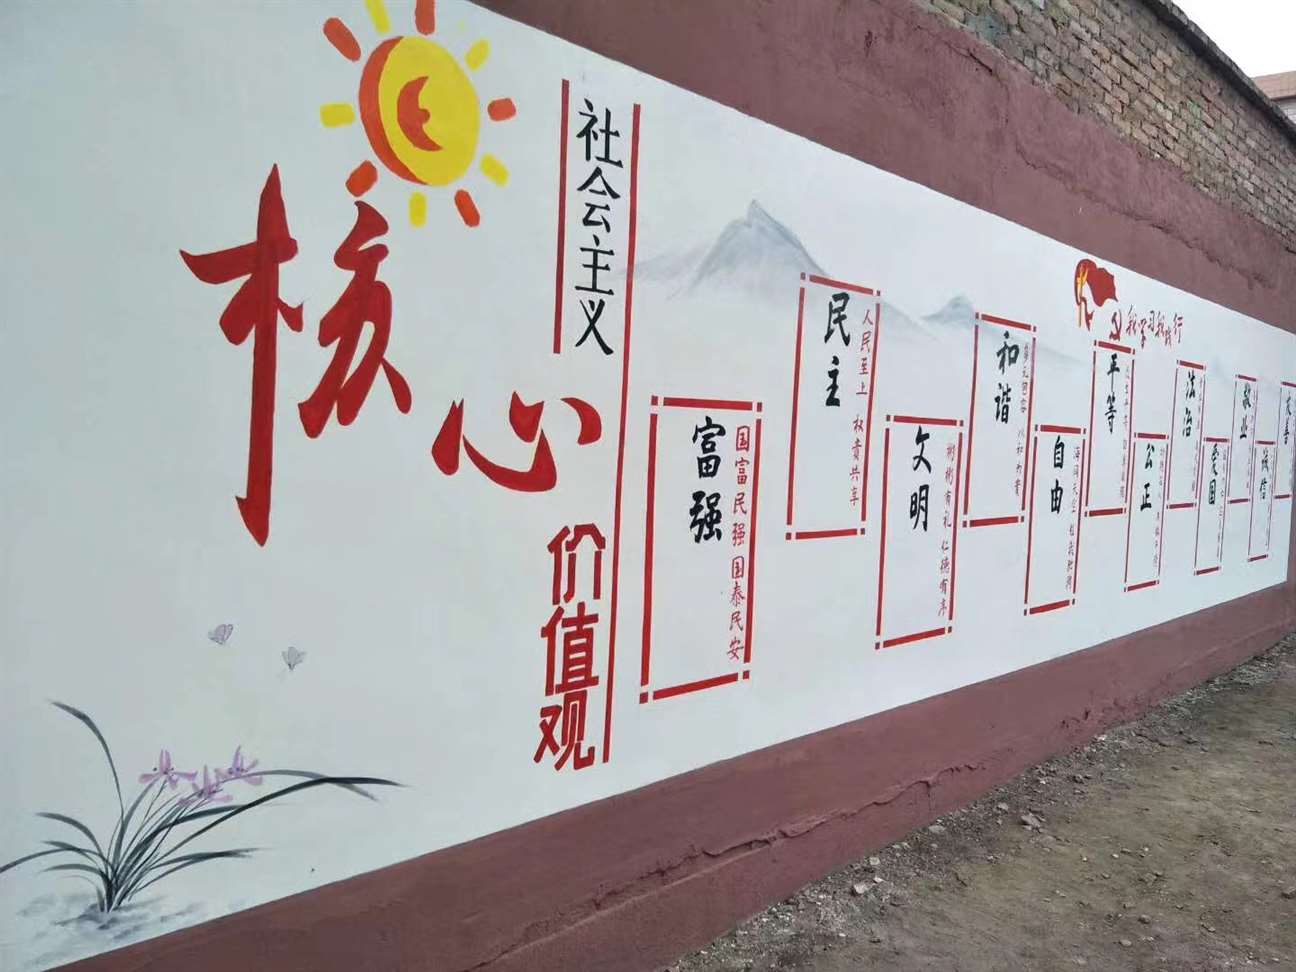 漯河墙面彩绘,漯河农村墙画手绘画,漯河墙画手绘广告